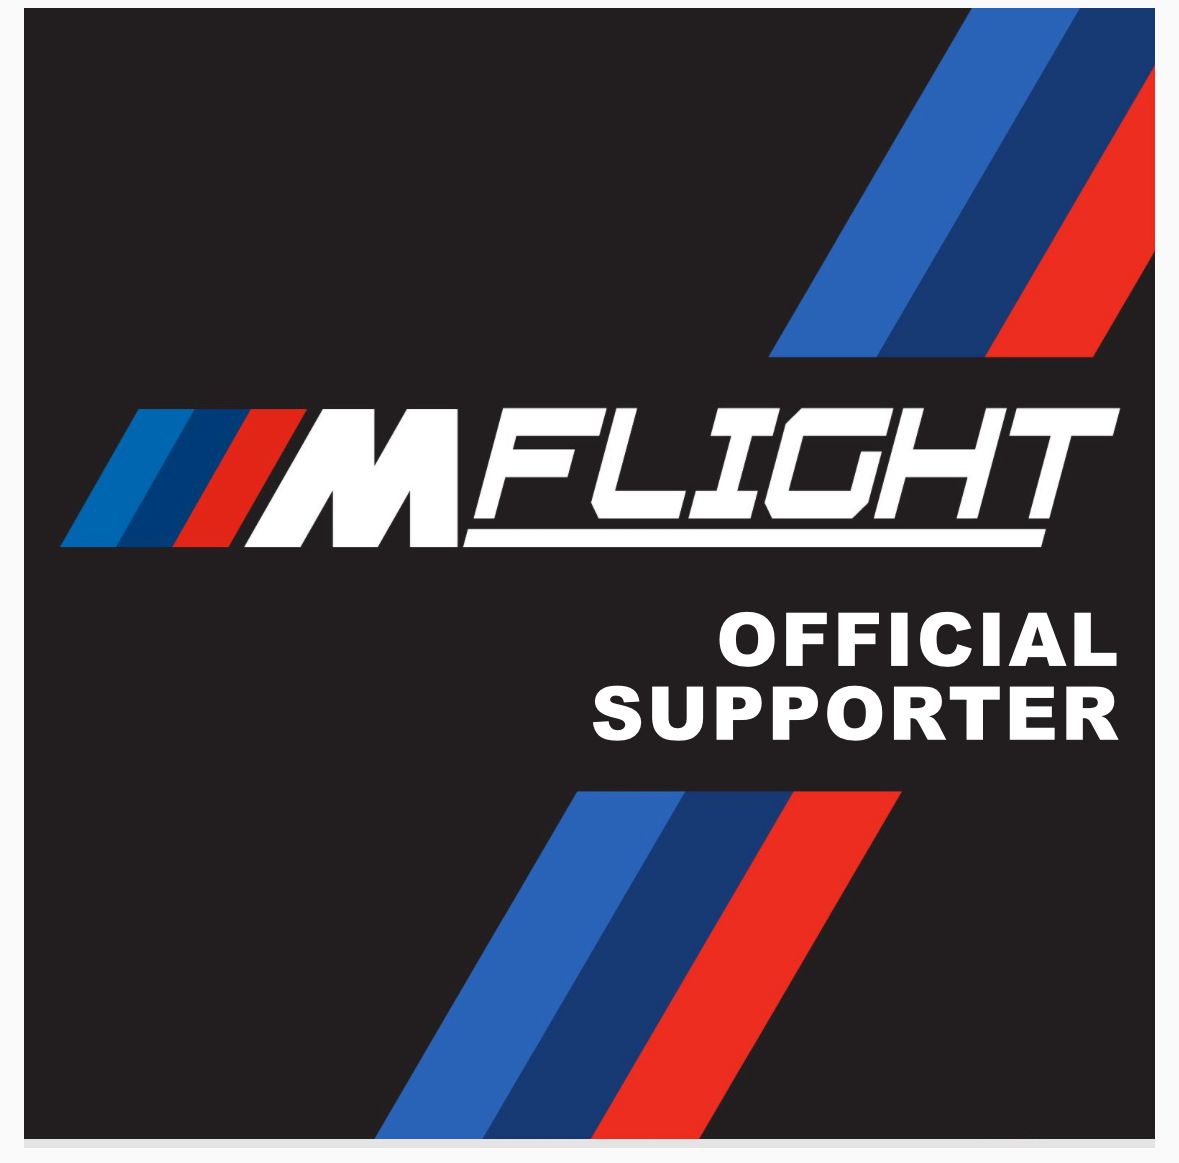 BMW MFlight Club